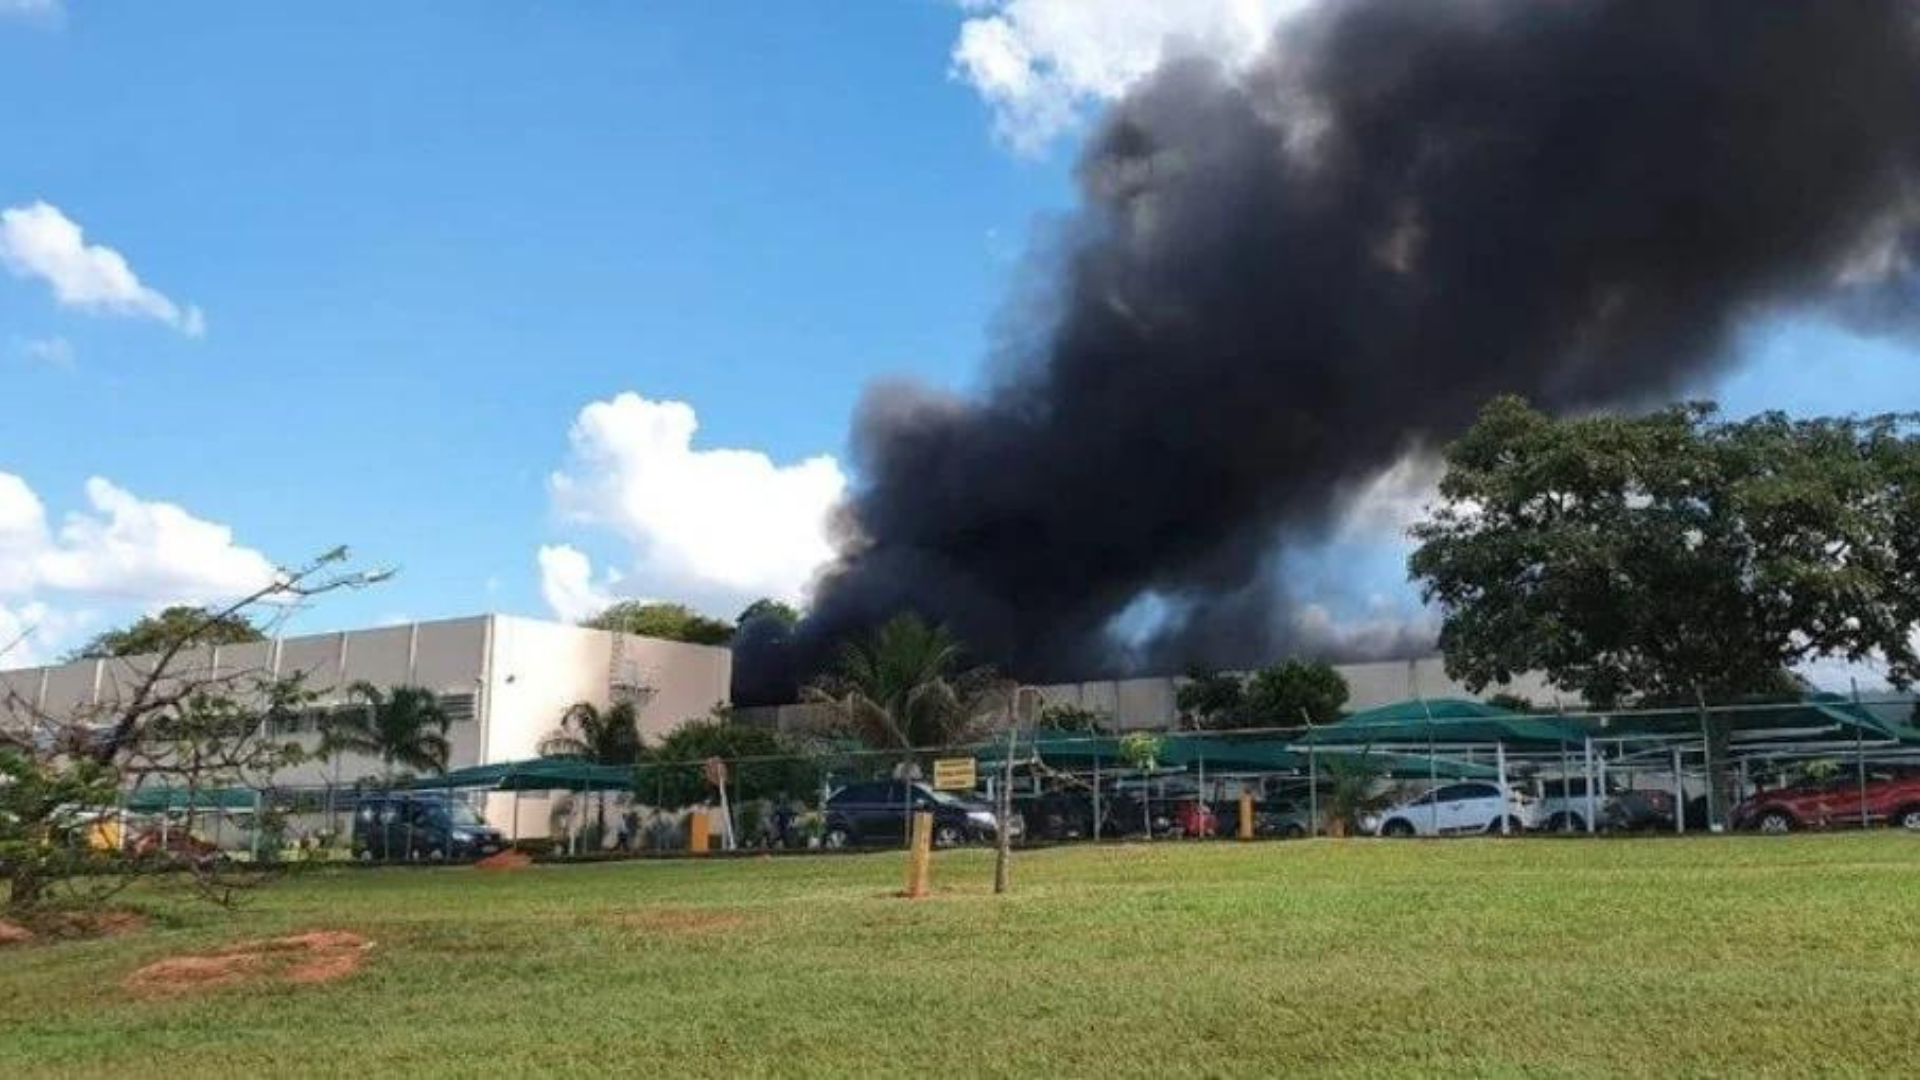 Garagem do Palácio do Planalto pega fogo. Foto de fumaça preta subindo no céu com estrutura do galpão ao fundo.